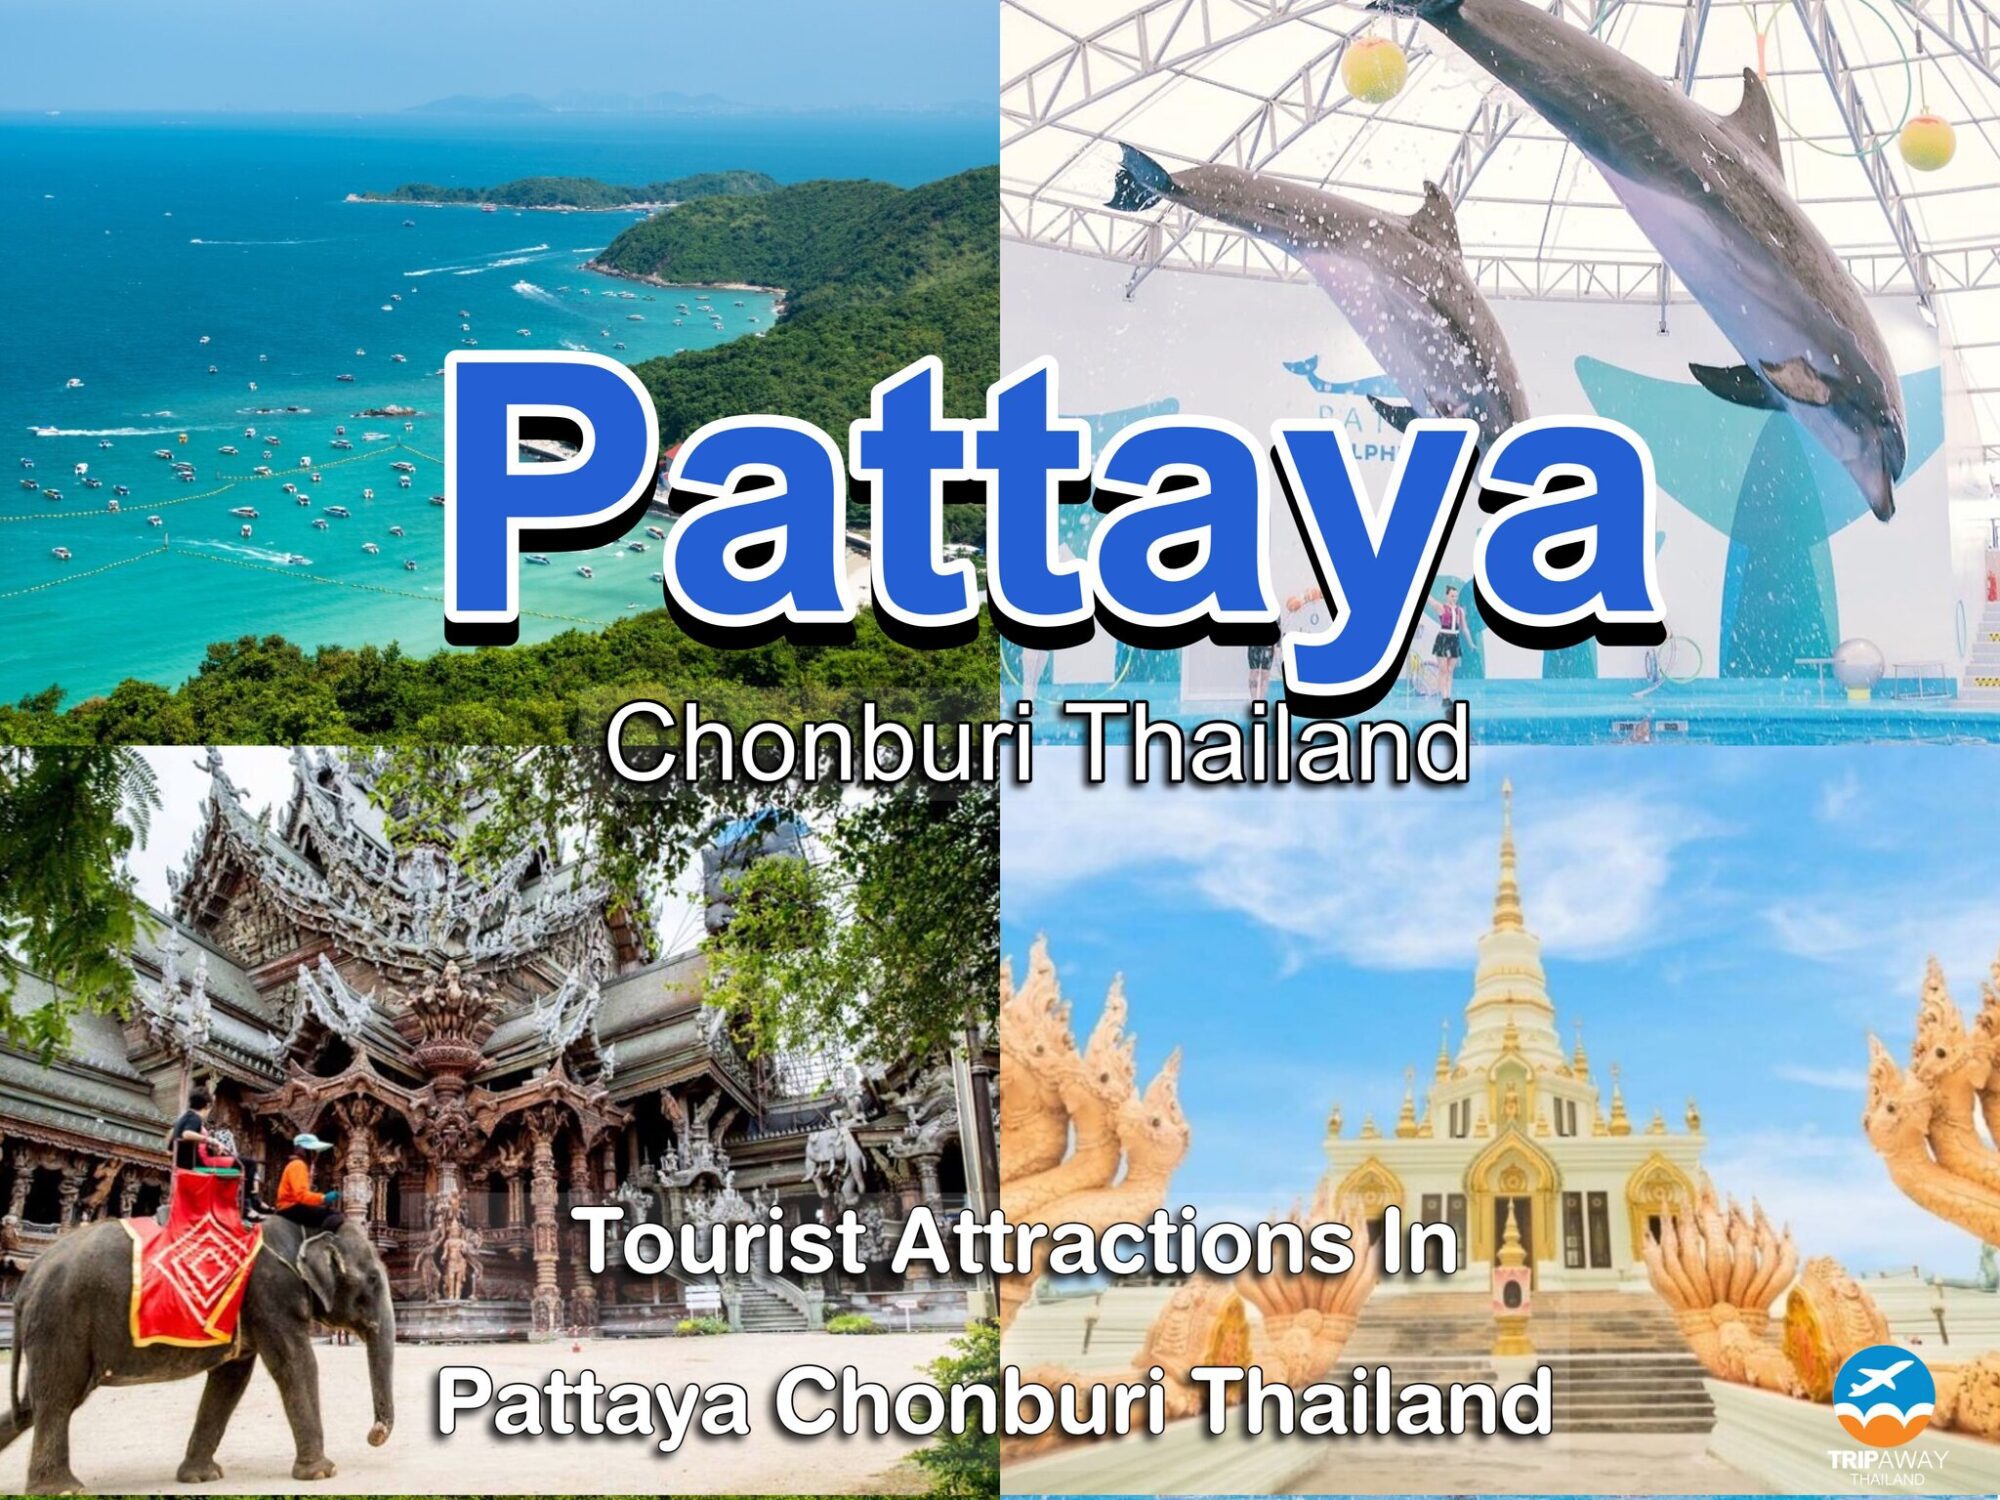 20 Tourist Attractions In Pattaya Chonburi Thailand